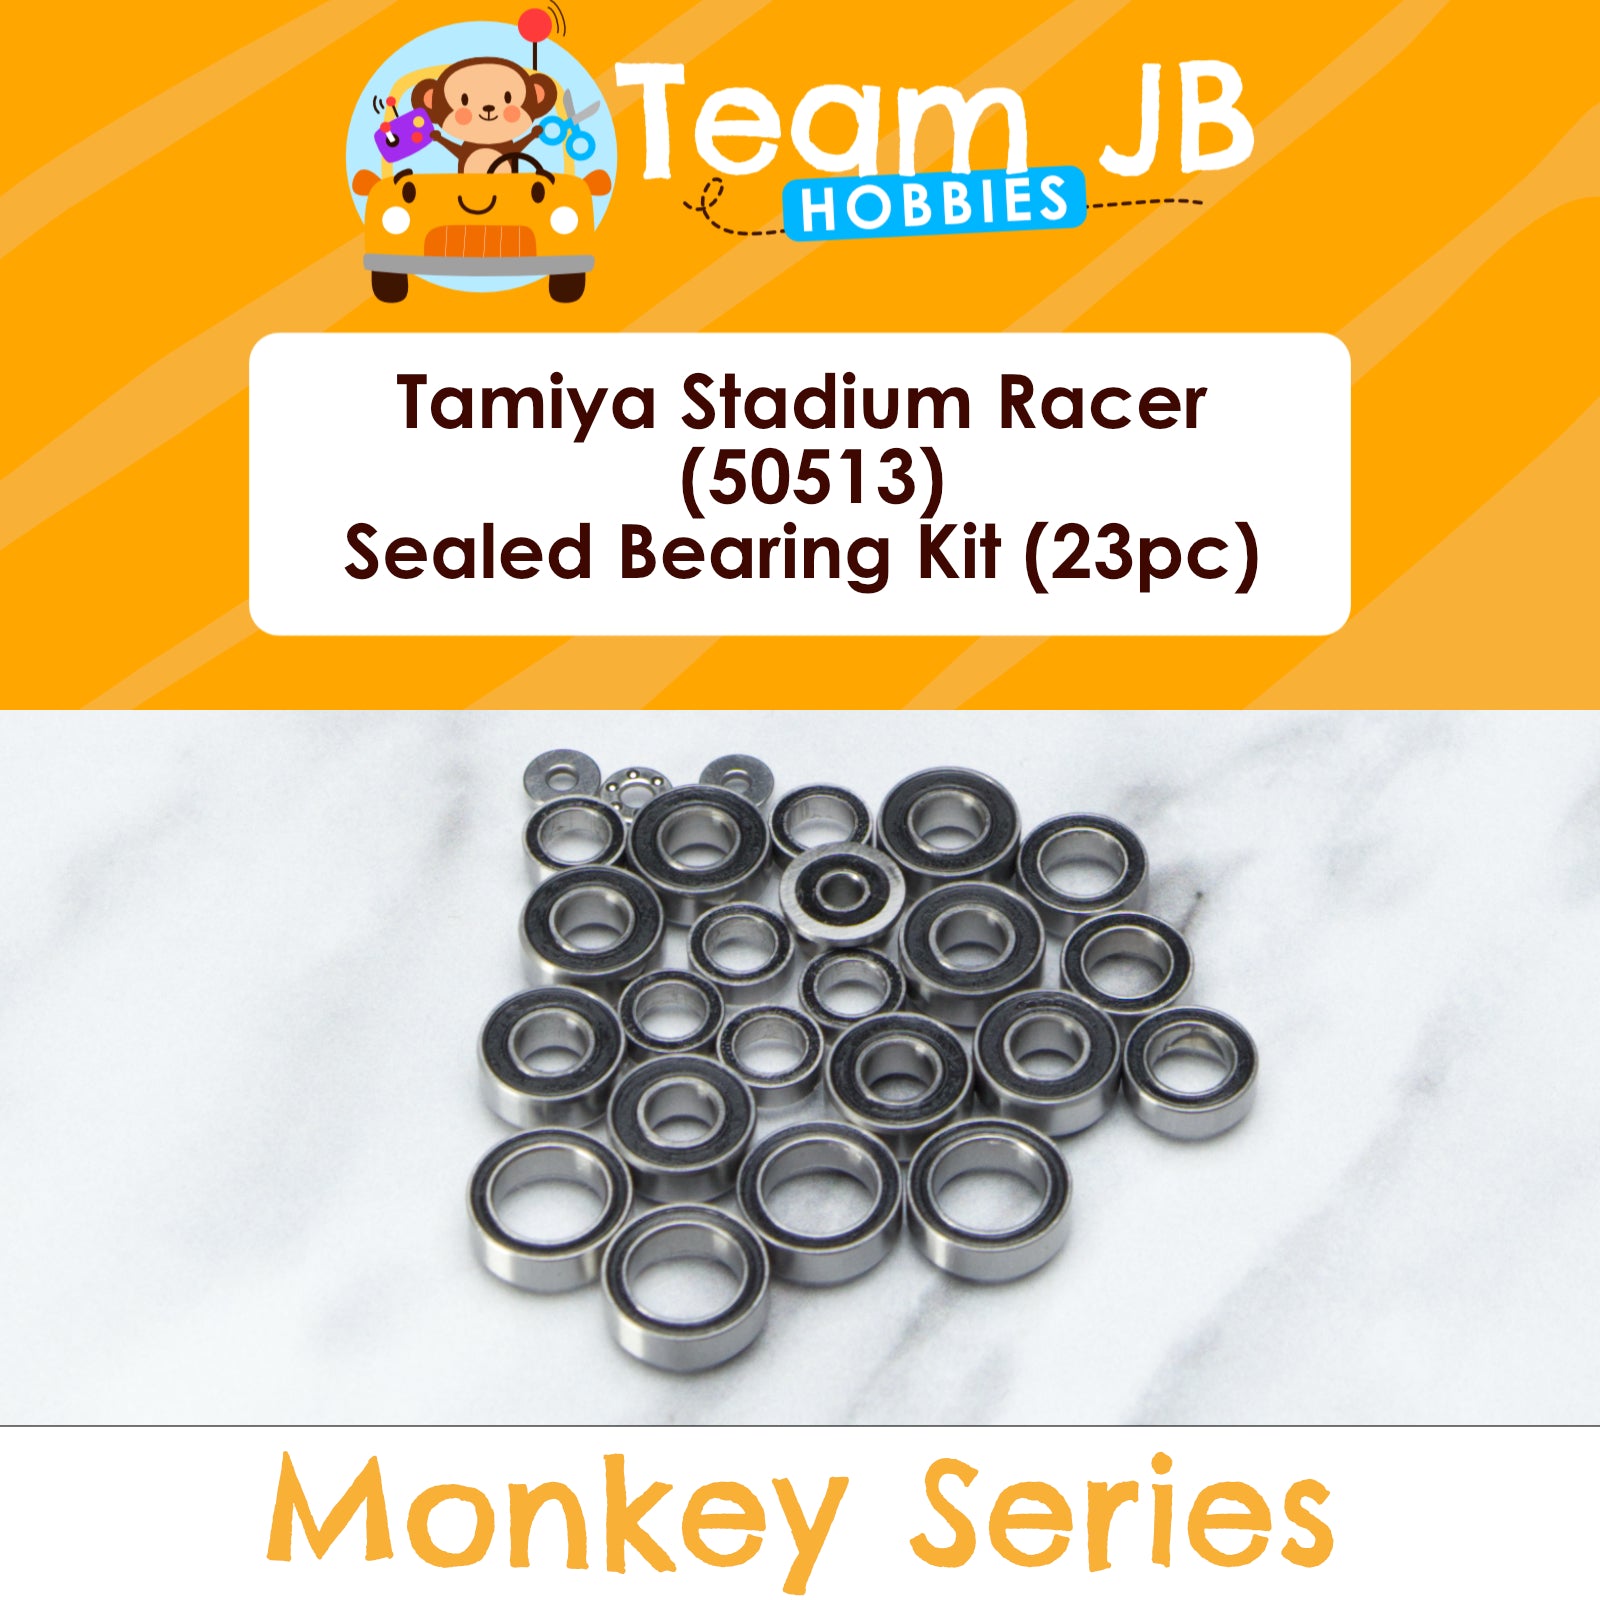 Tamiya Stadium Racer (50513) - Sealed Bearing Kit